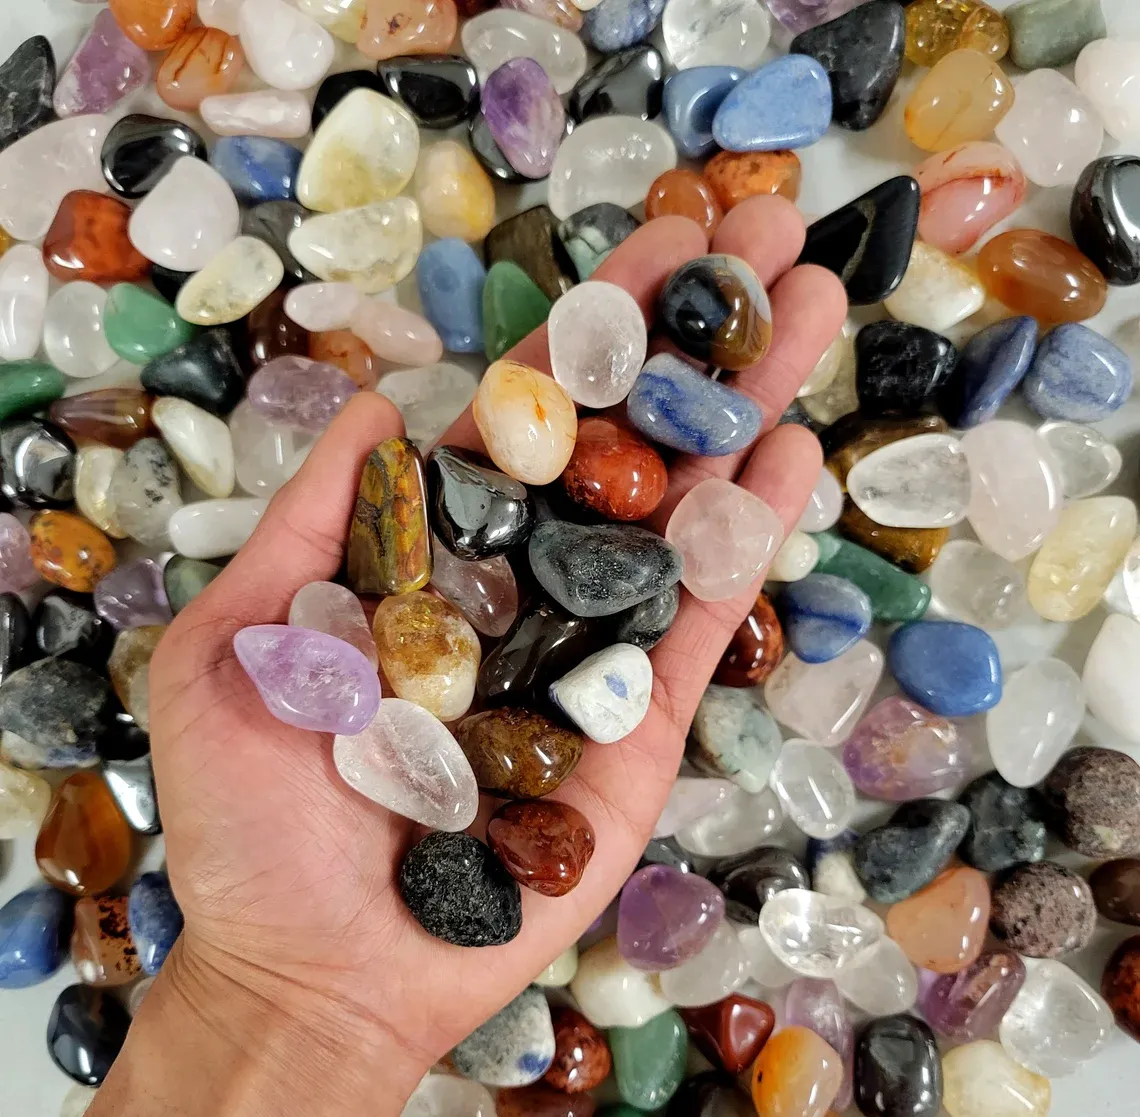 Bulk natürlichen Roh stein Amethyst Rosenquarz Fengshui Heil kristall Energie Tumble Stone Chips Stein für Aquarium Garten